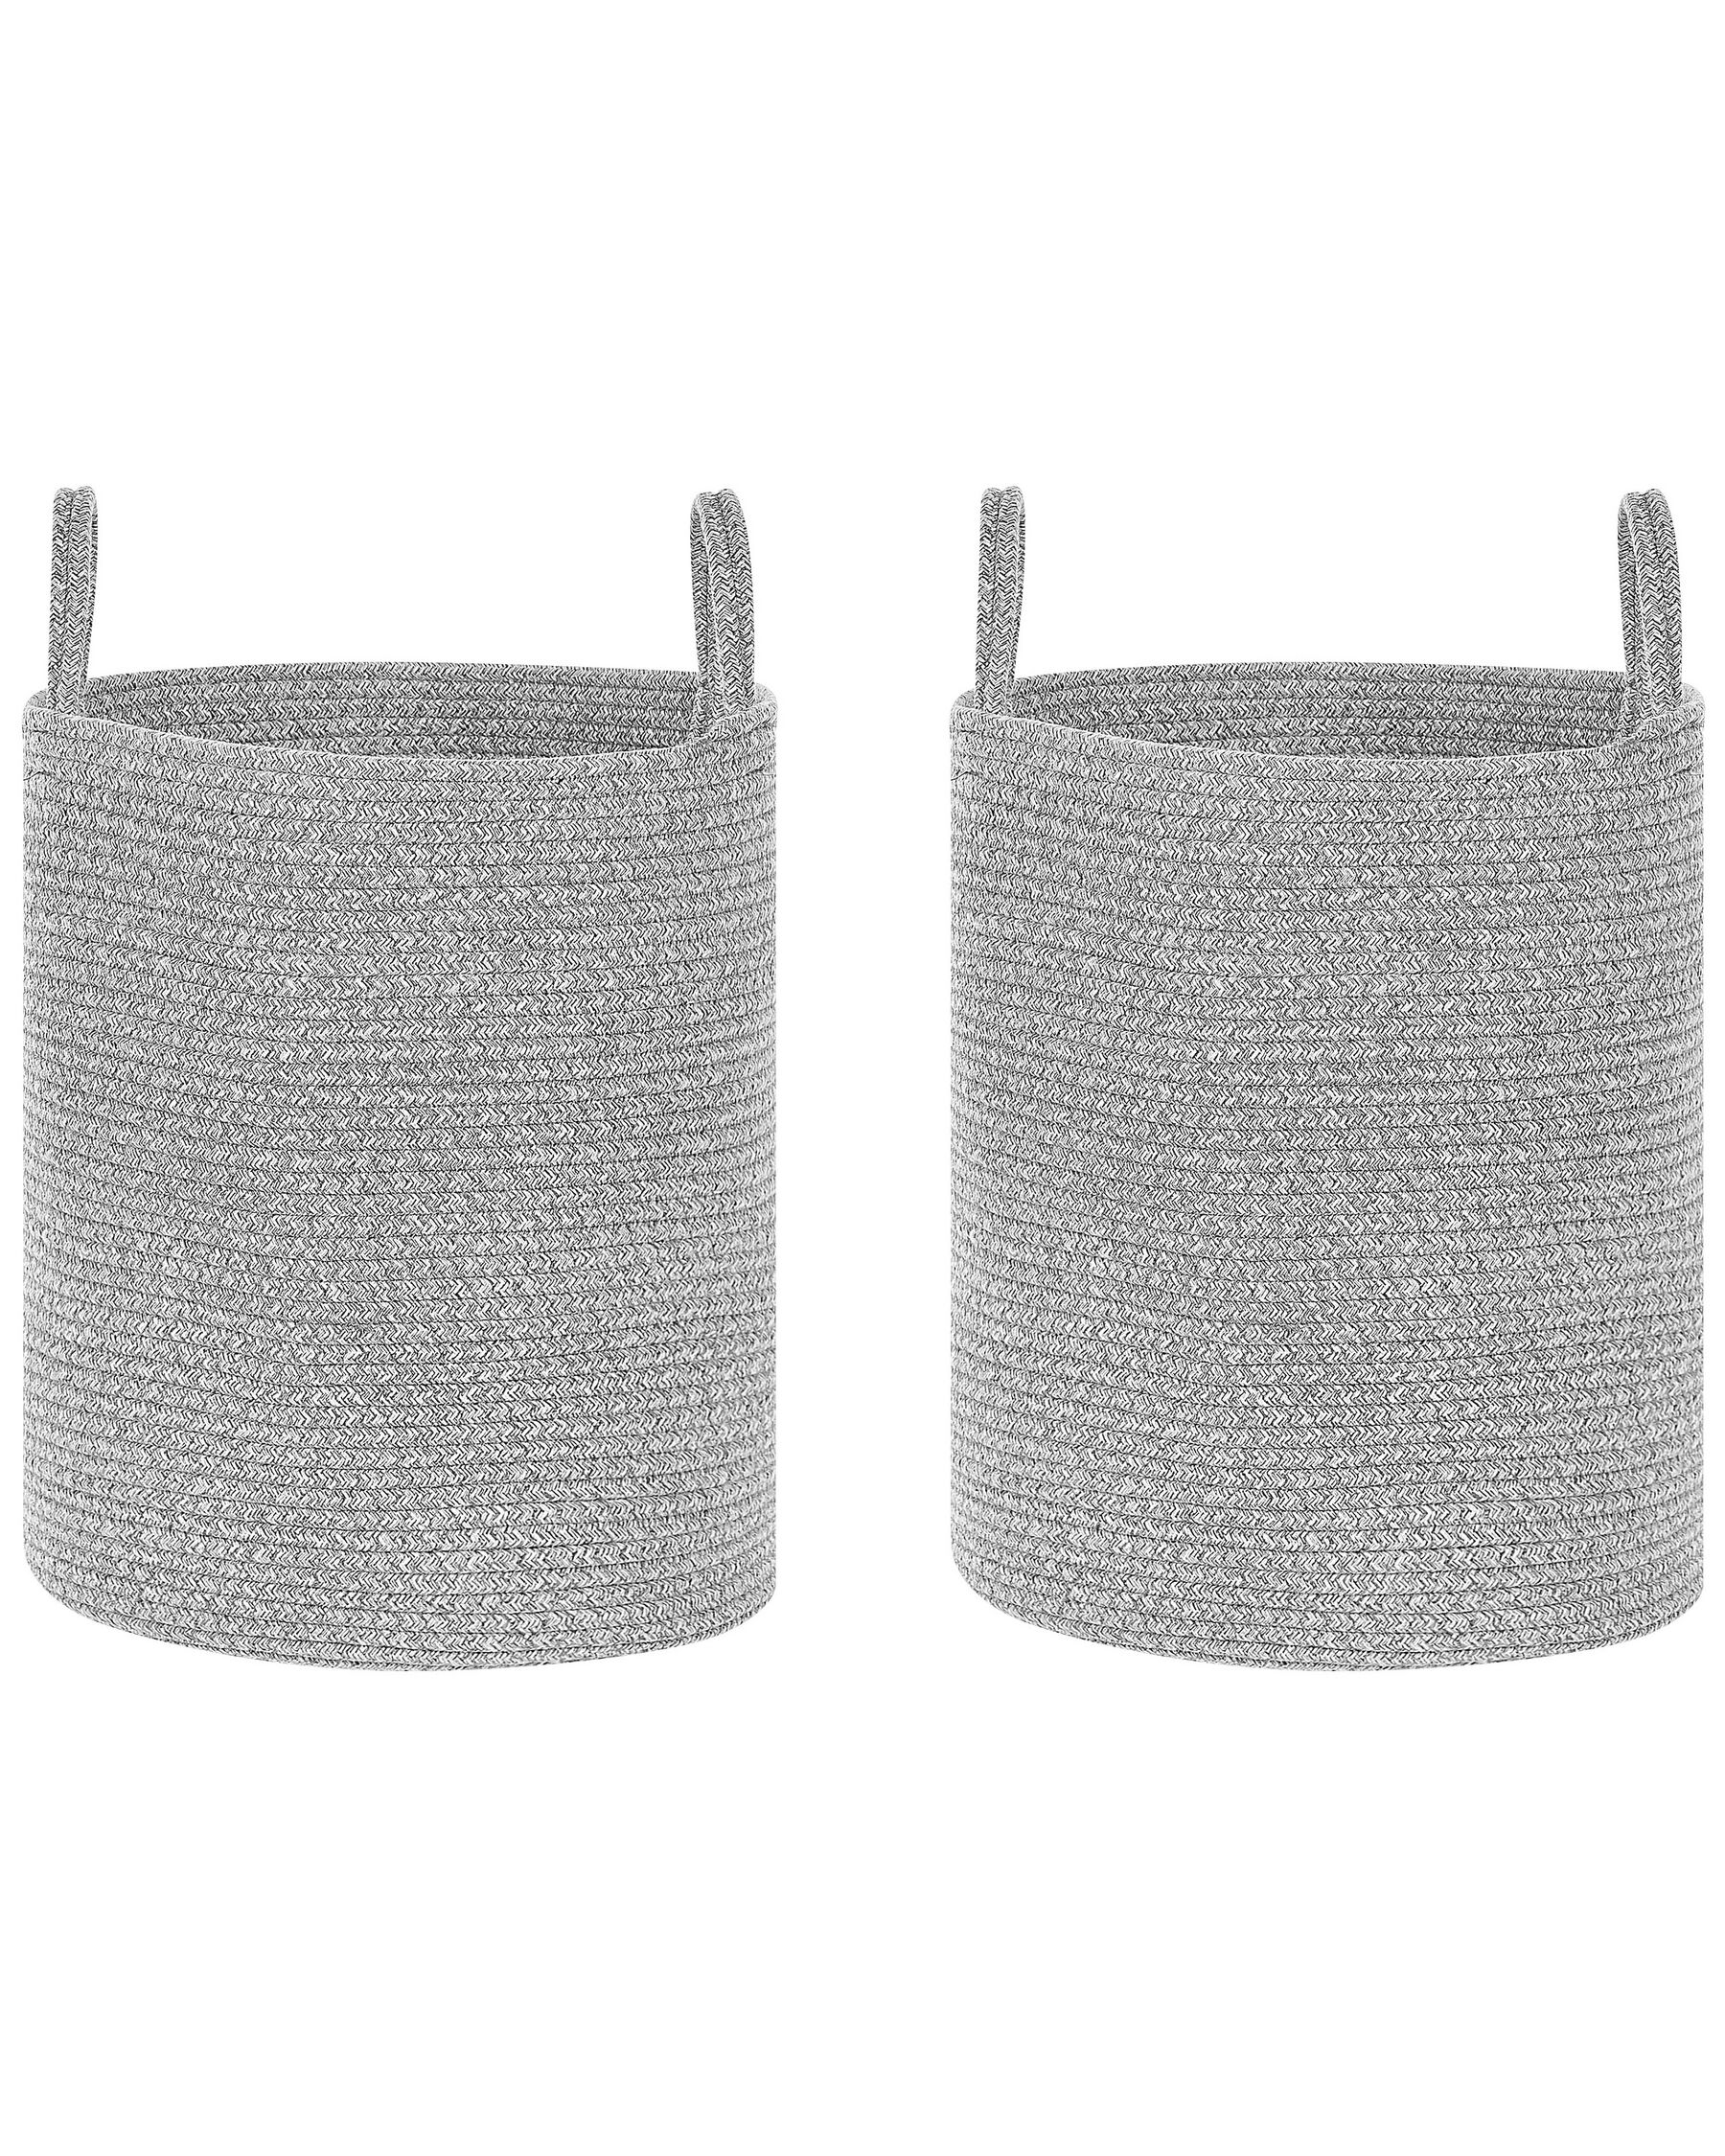 Conjunto de 2 cestas de algodón gris 39 cm SARYK_849427